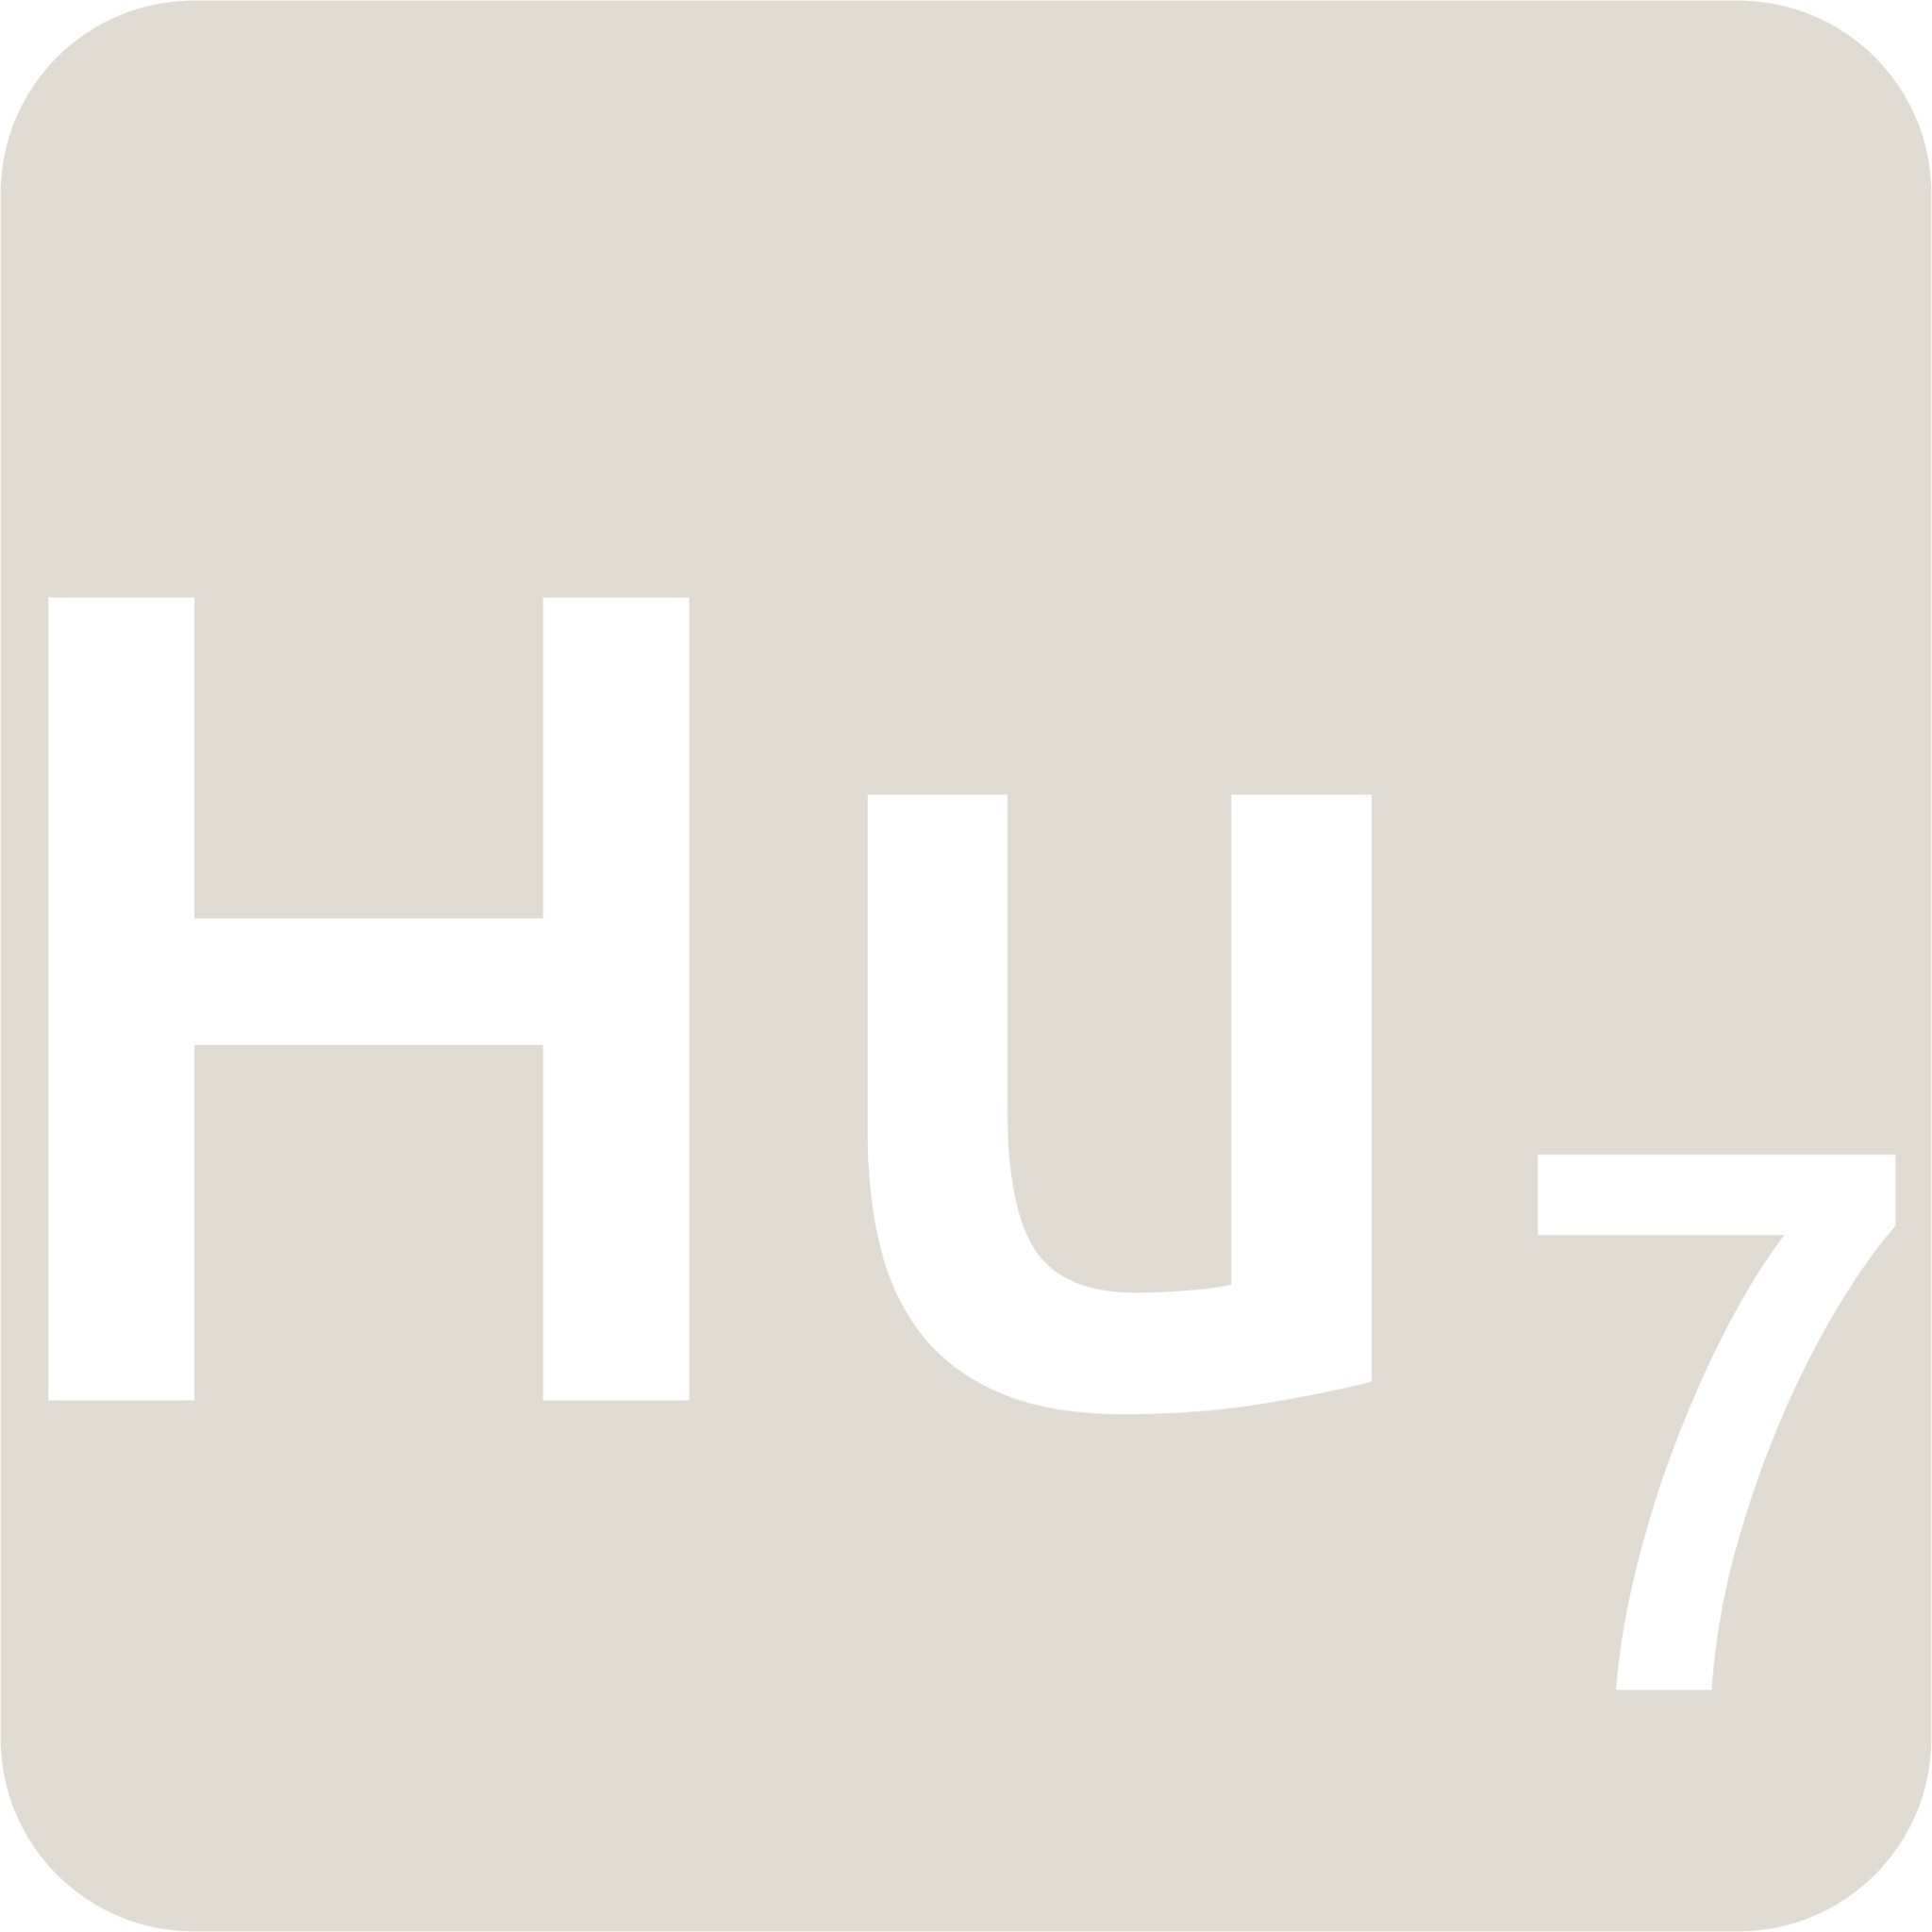 indicator keyboard Hu 7 icon